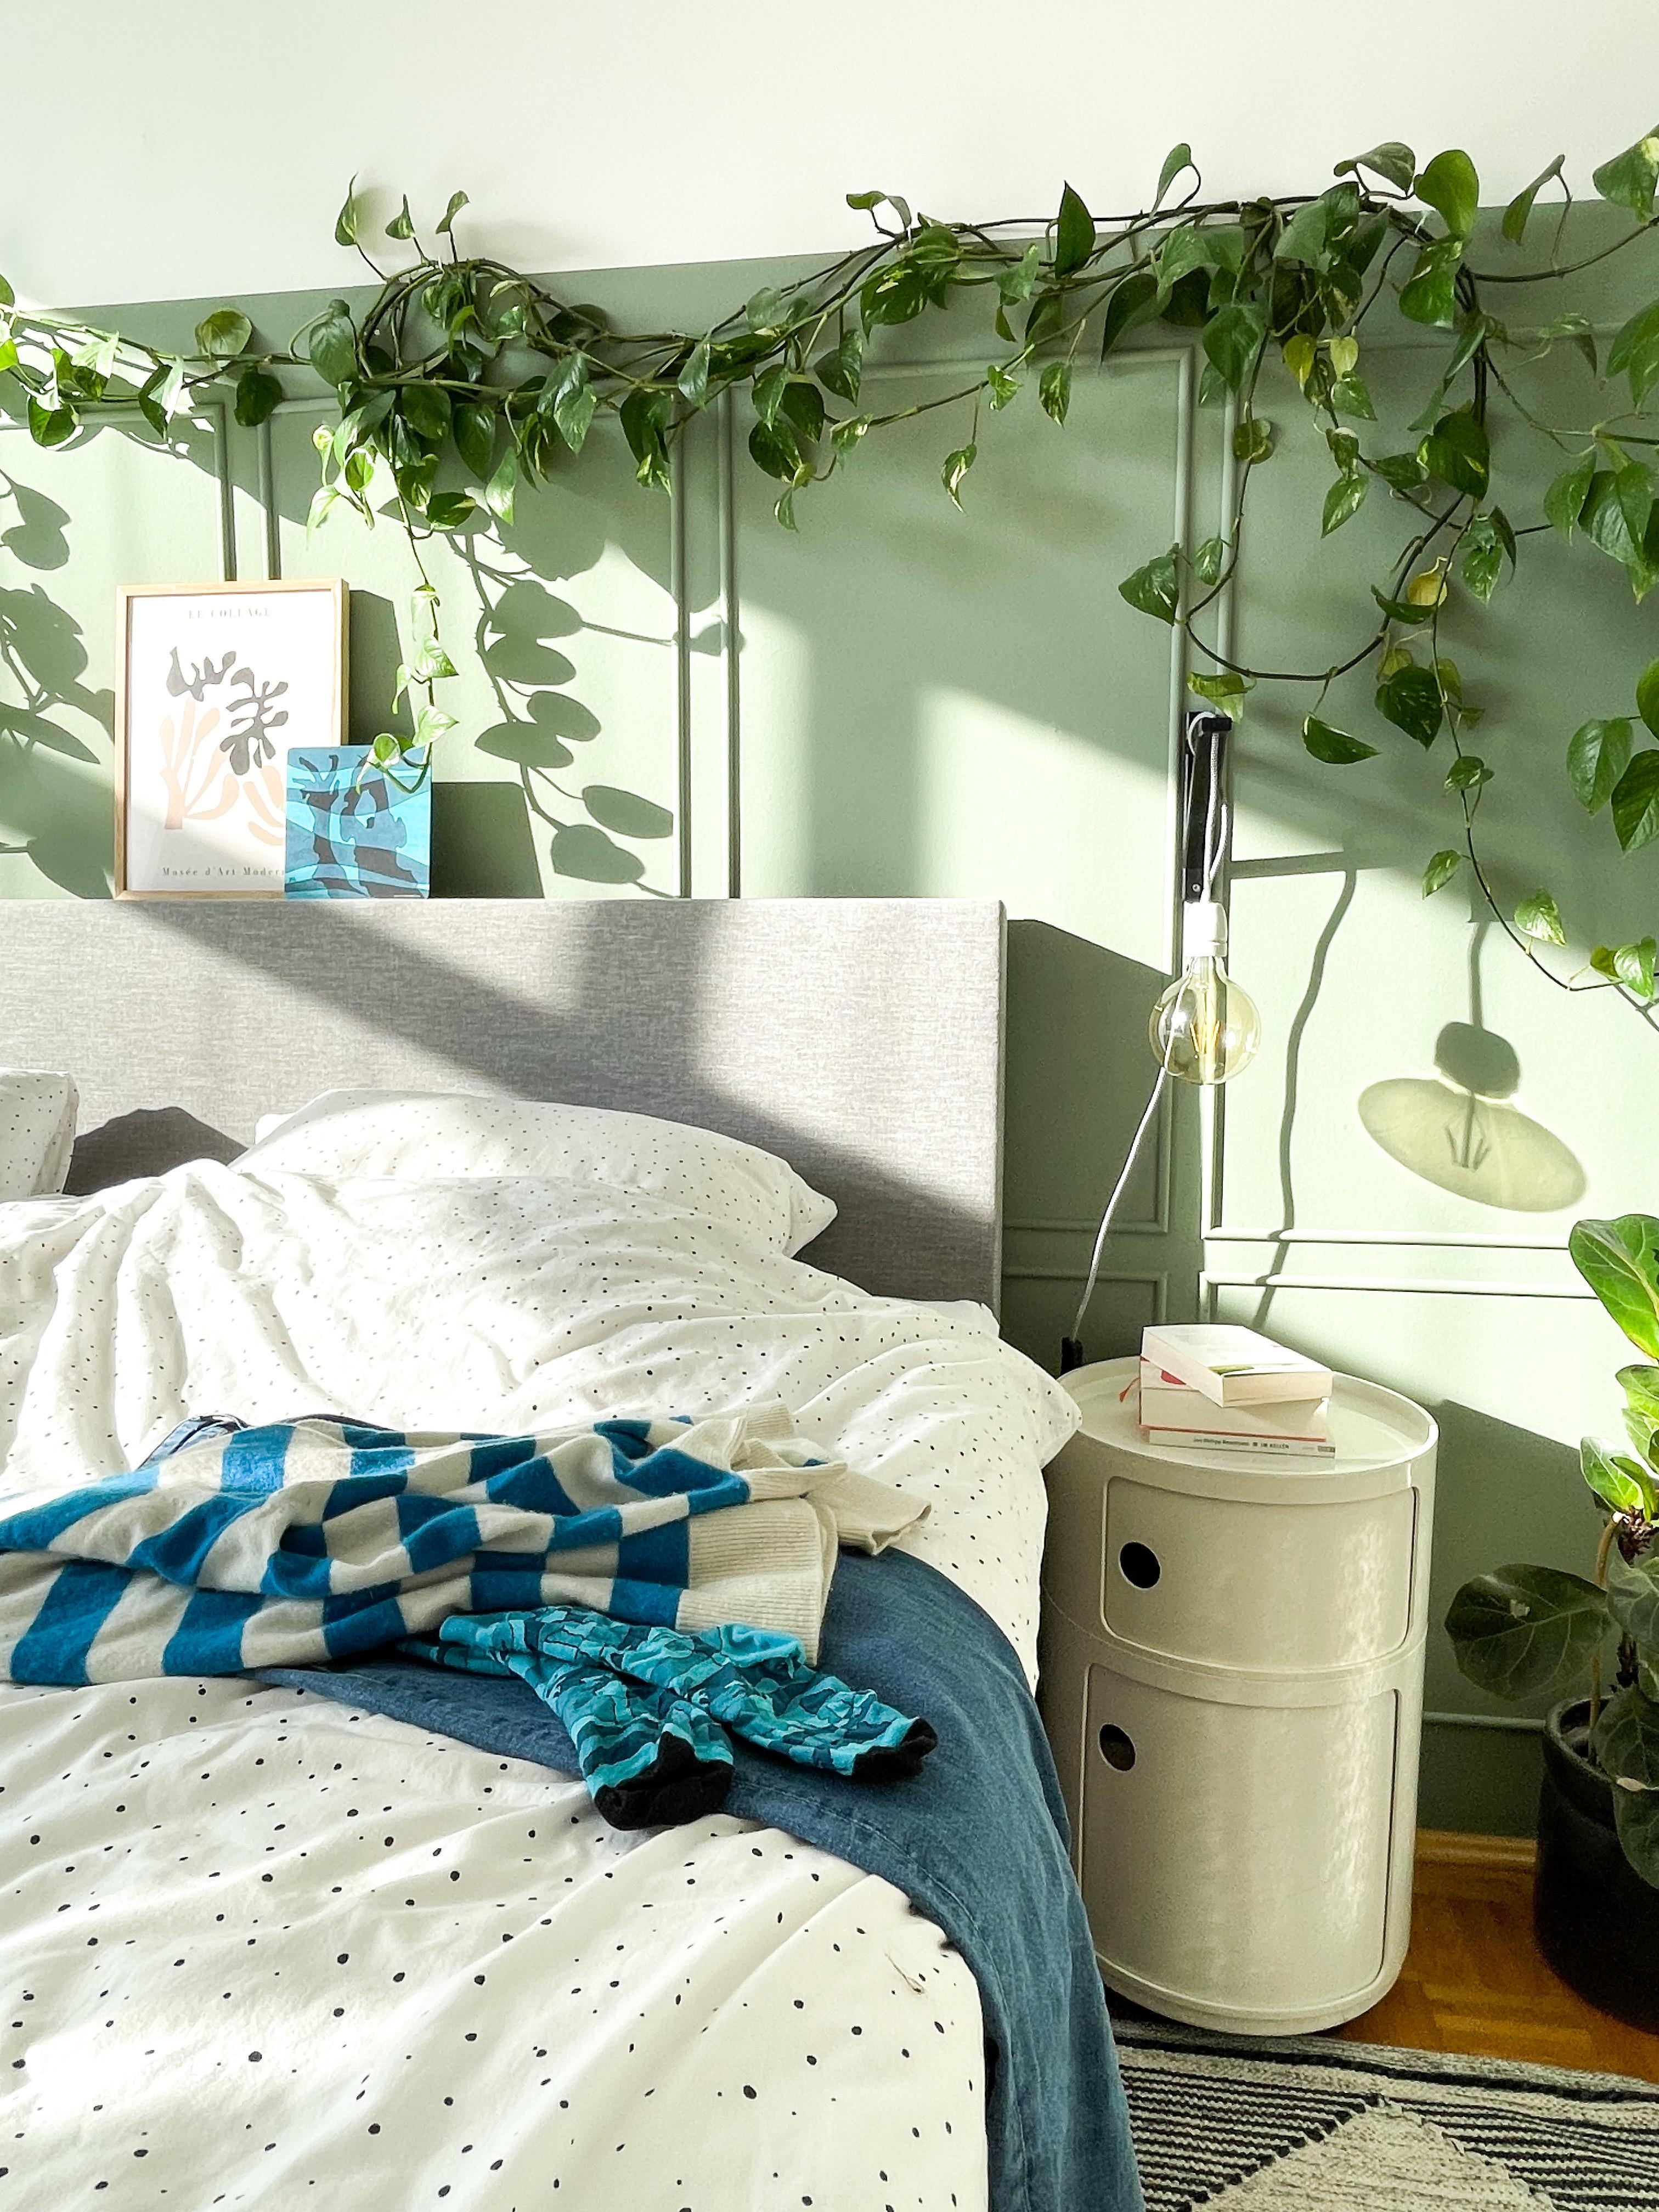 Grüner wird‘s nicht ...

#Schlafzimmer #Bett #Bettwäsche #pflanze #Sonnenschein #Grün